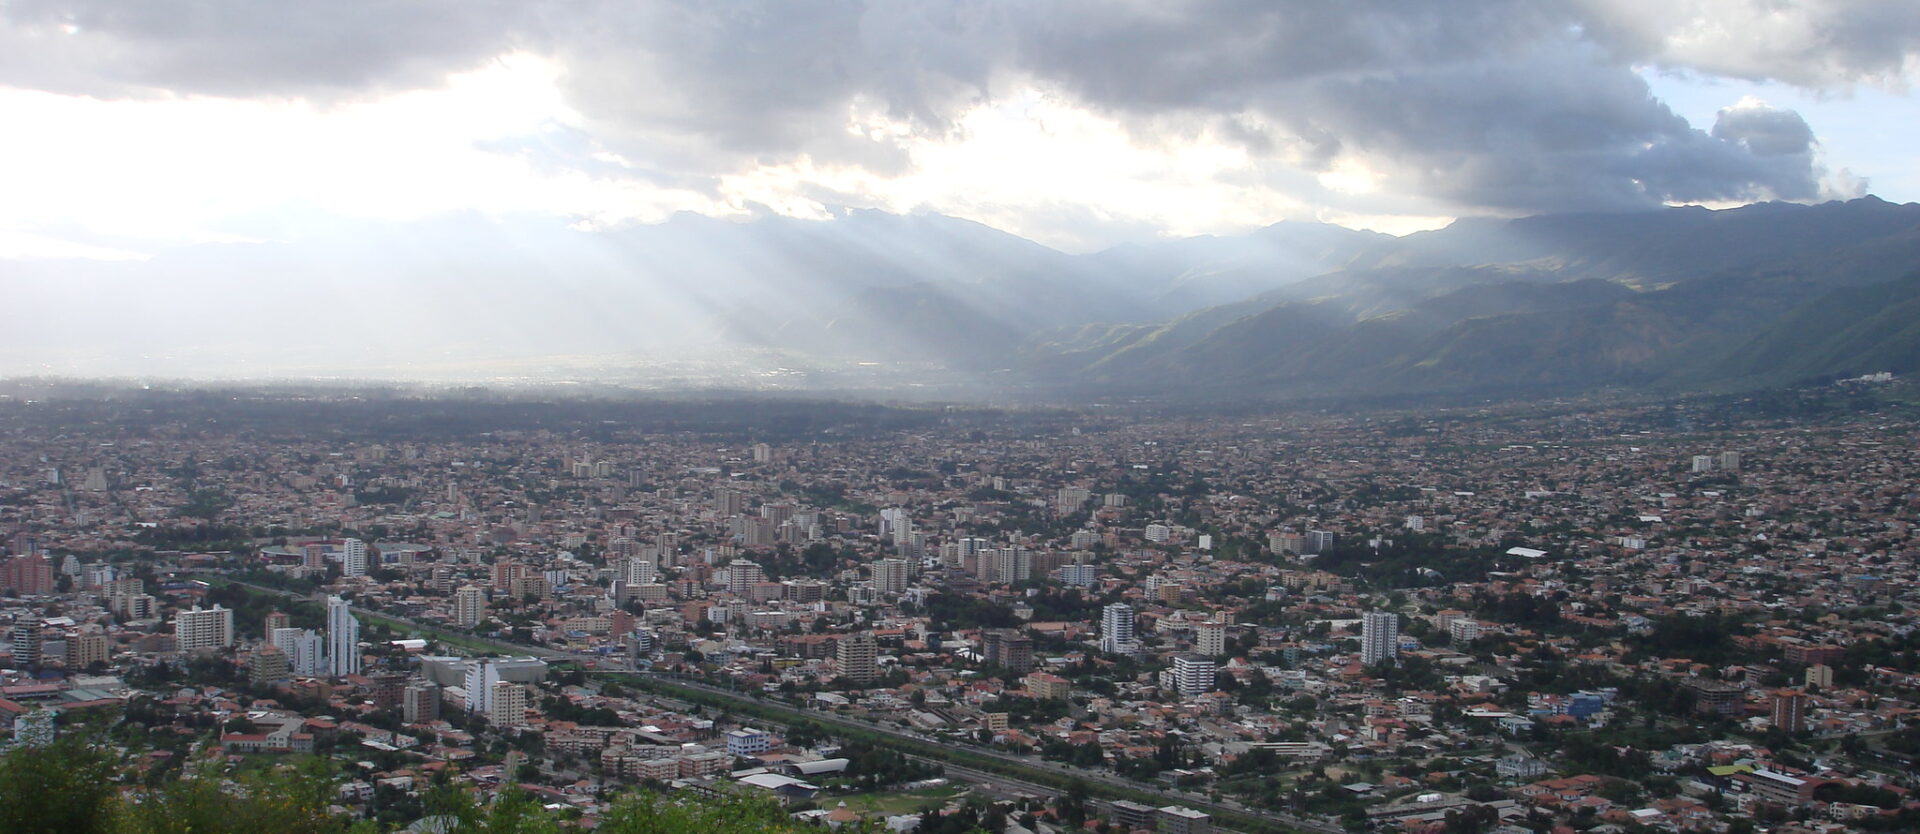 La ville de Cochabamba, au sud-ouest de la Bolivie, où le Père P. aurait agressé la plupart des victimes | © Mauricio Frias/Flickr/CC BY-NC 2.0